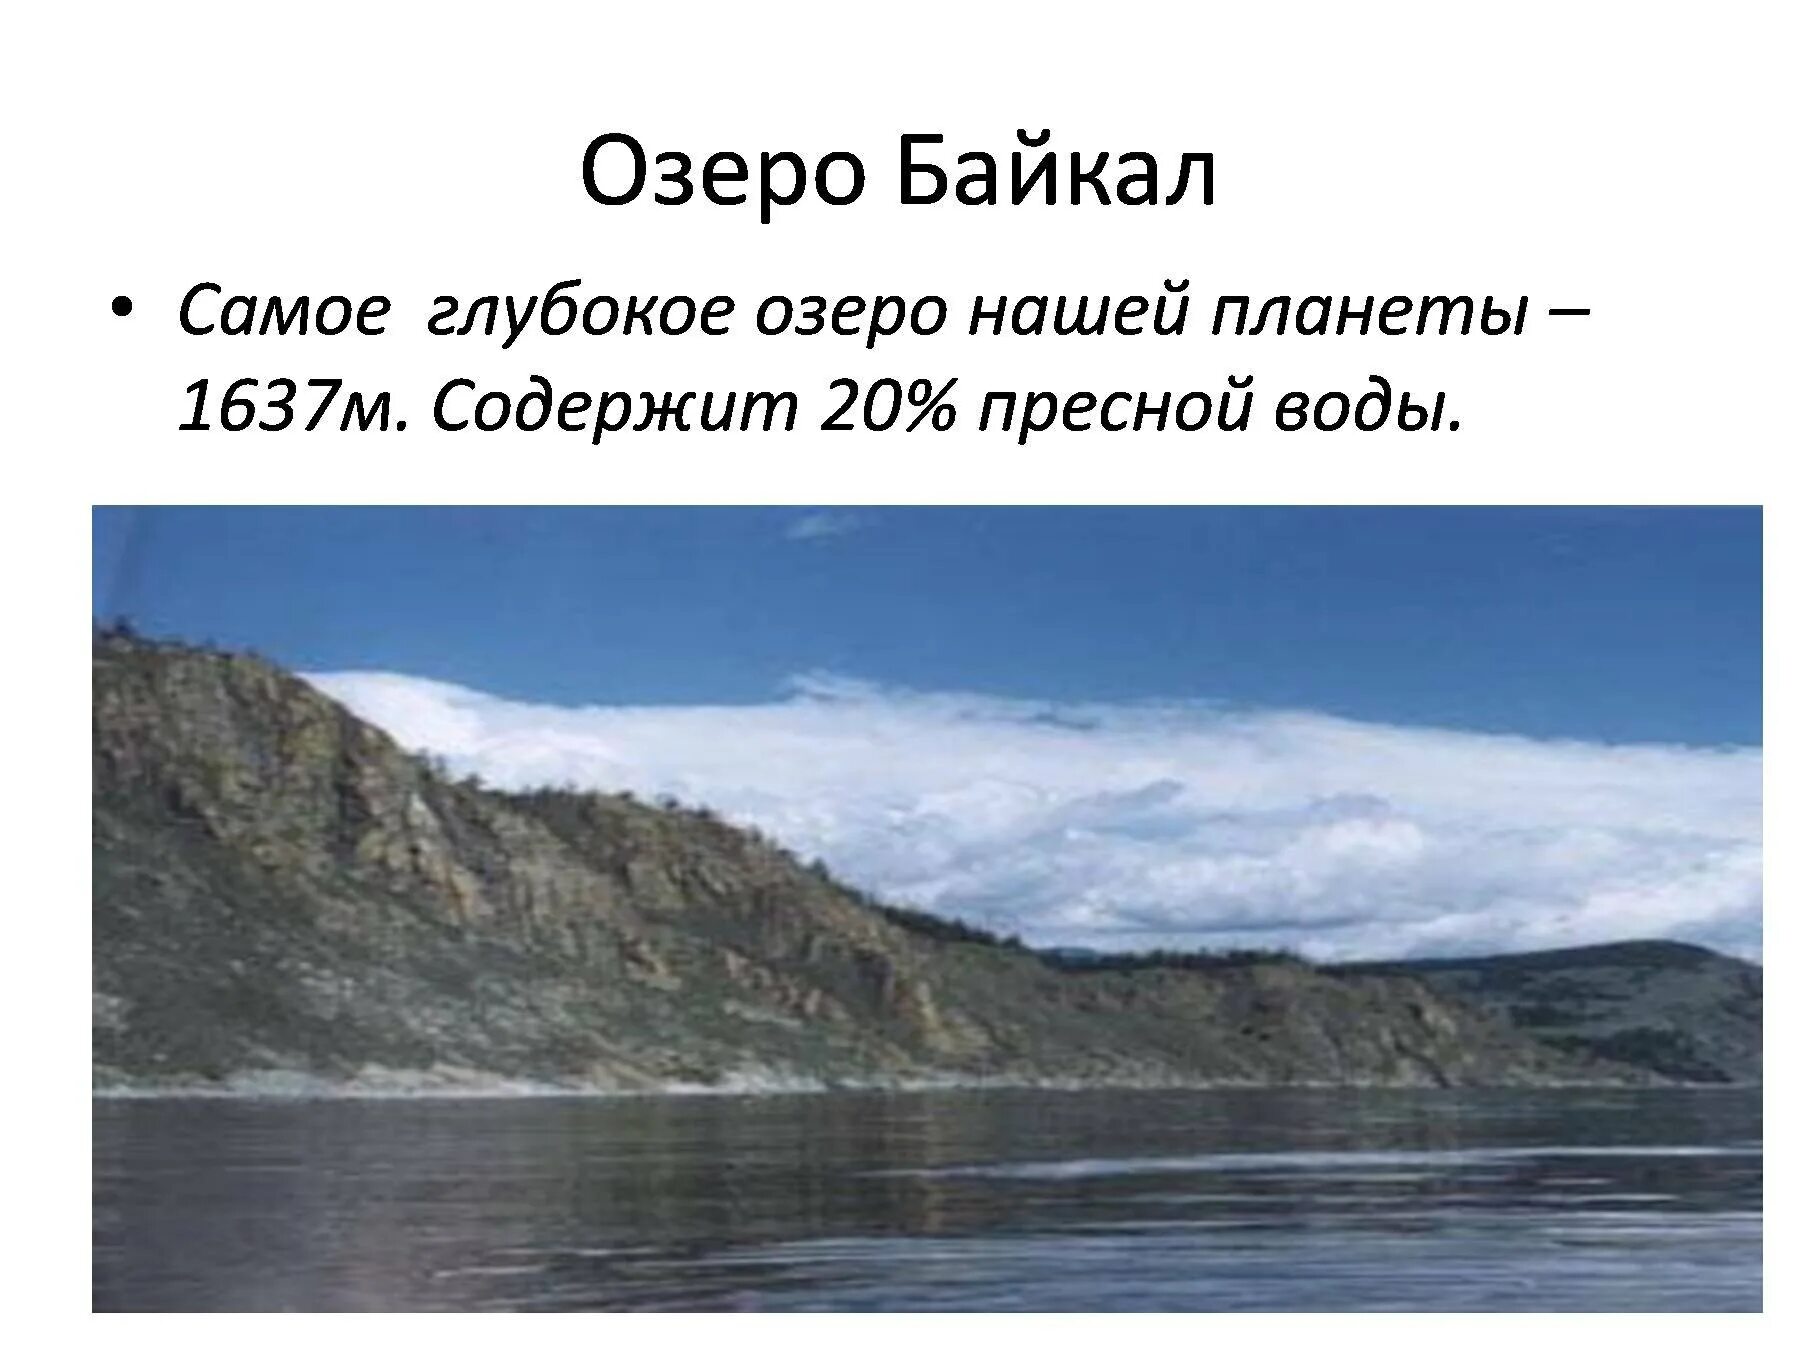 Байкал самое глубокое озеро задача впр. Самое глубокое озеро нашей планеты. Диктант озеро Байкал. Самое глубокое озеро диктант Байкал глубочайшее озеро. Глубина озера Байкал диктант.